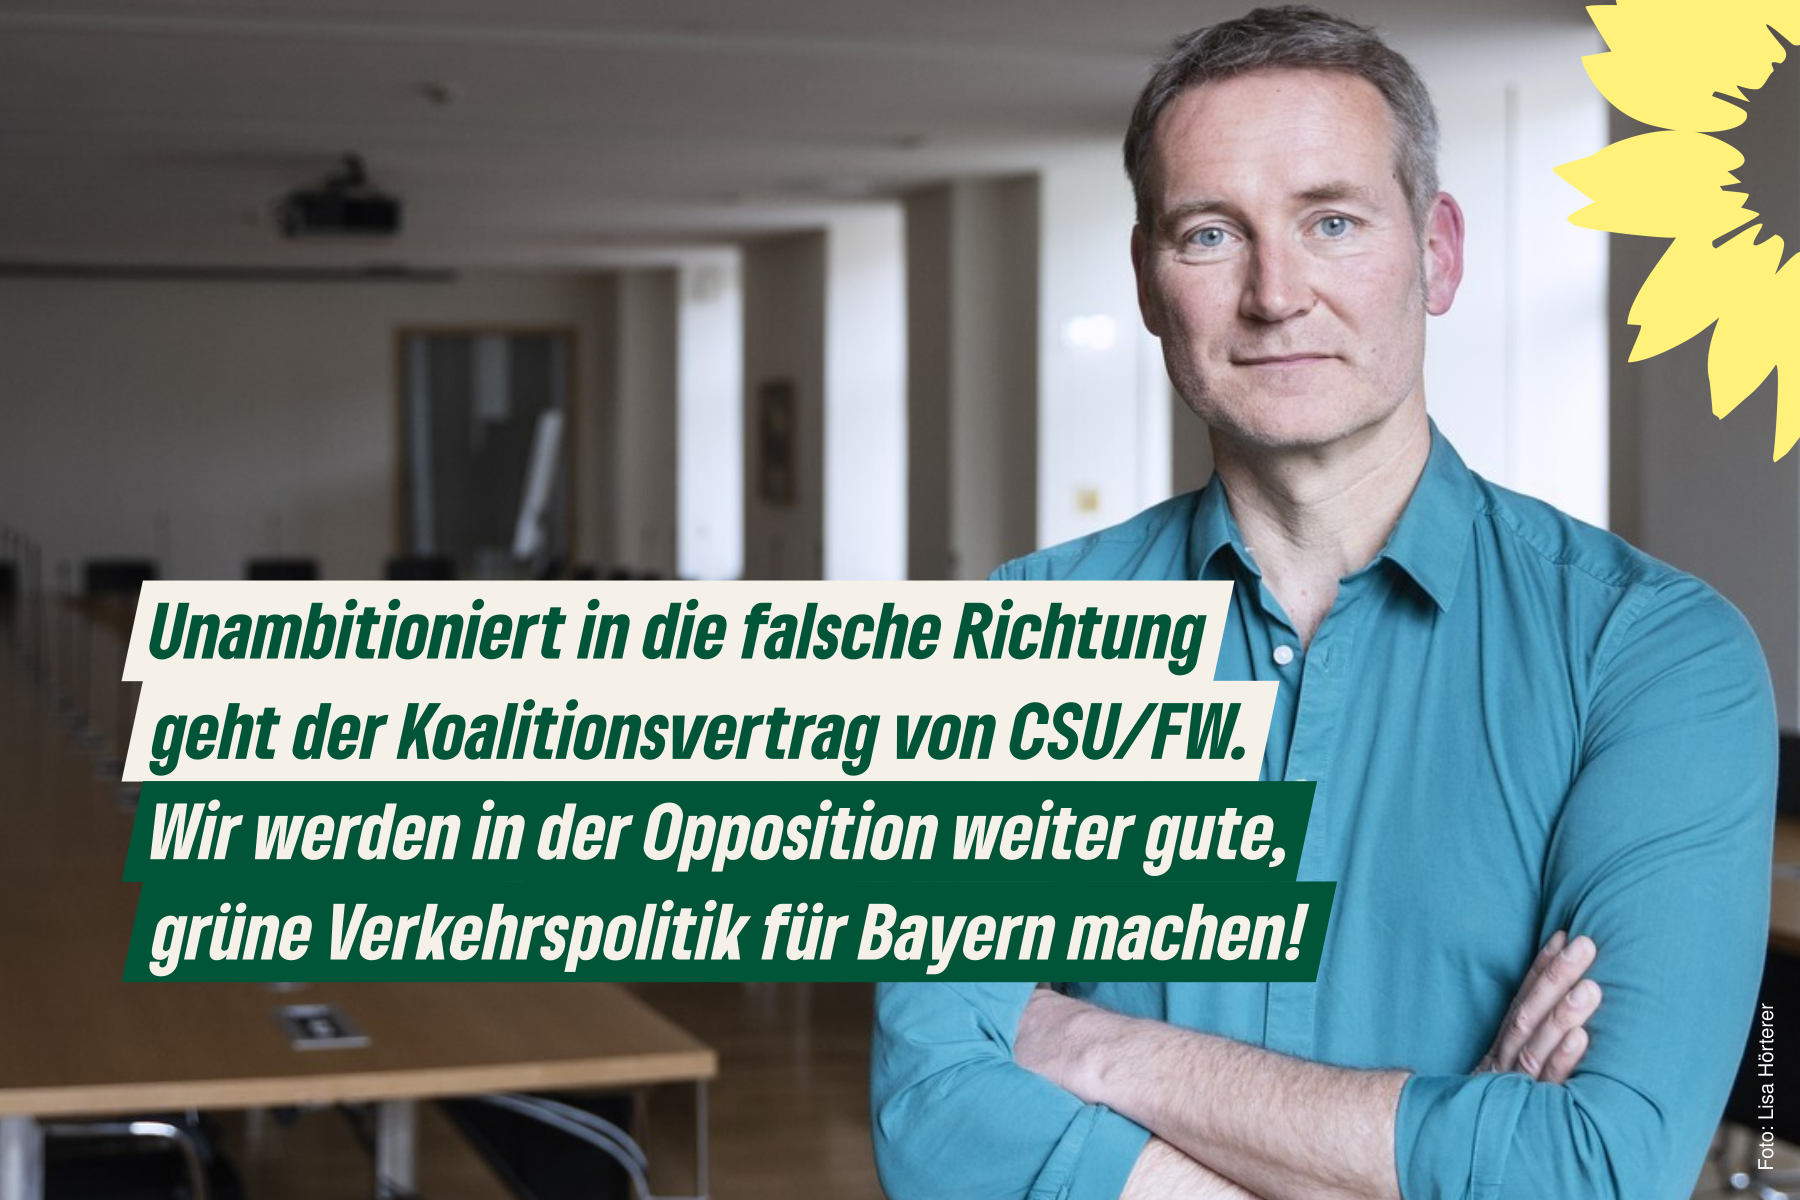 Markus Büchler mit verschränkten Armen im Sitzungssaal der Koalitionsverhandlungen mit Zitat: "Unambitioniert in die falsche Richtung geht der Koalitionsvertrag von CSU/FW. Wir werden in der Opposition weiter gute, grüne Verkehrspolitik für Bayern machen!"